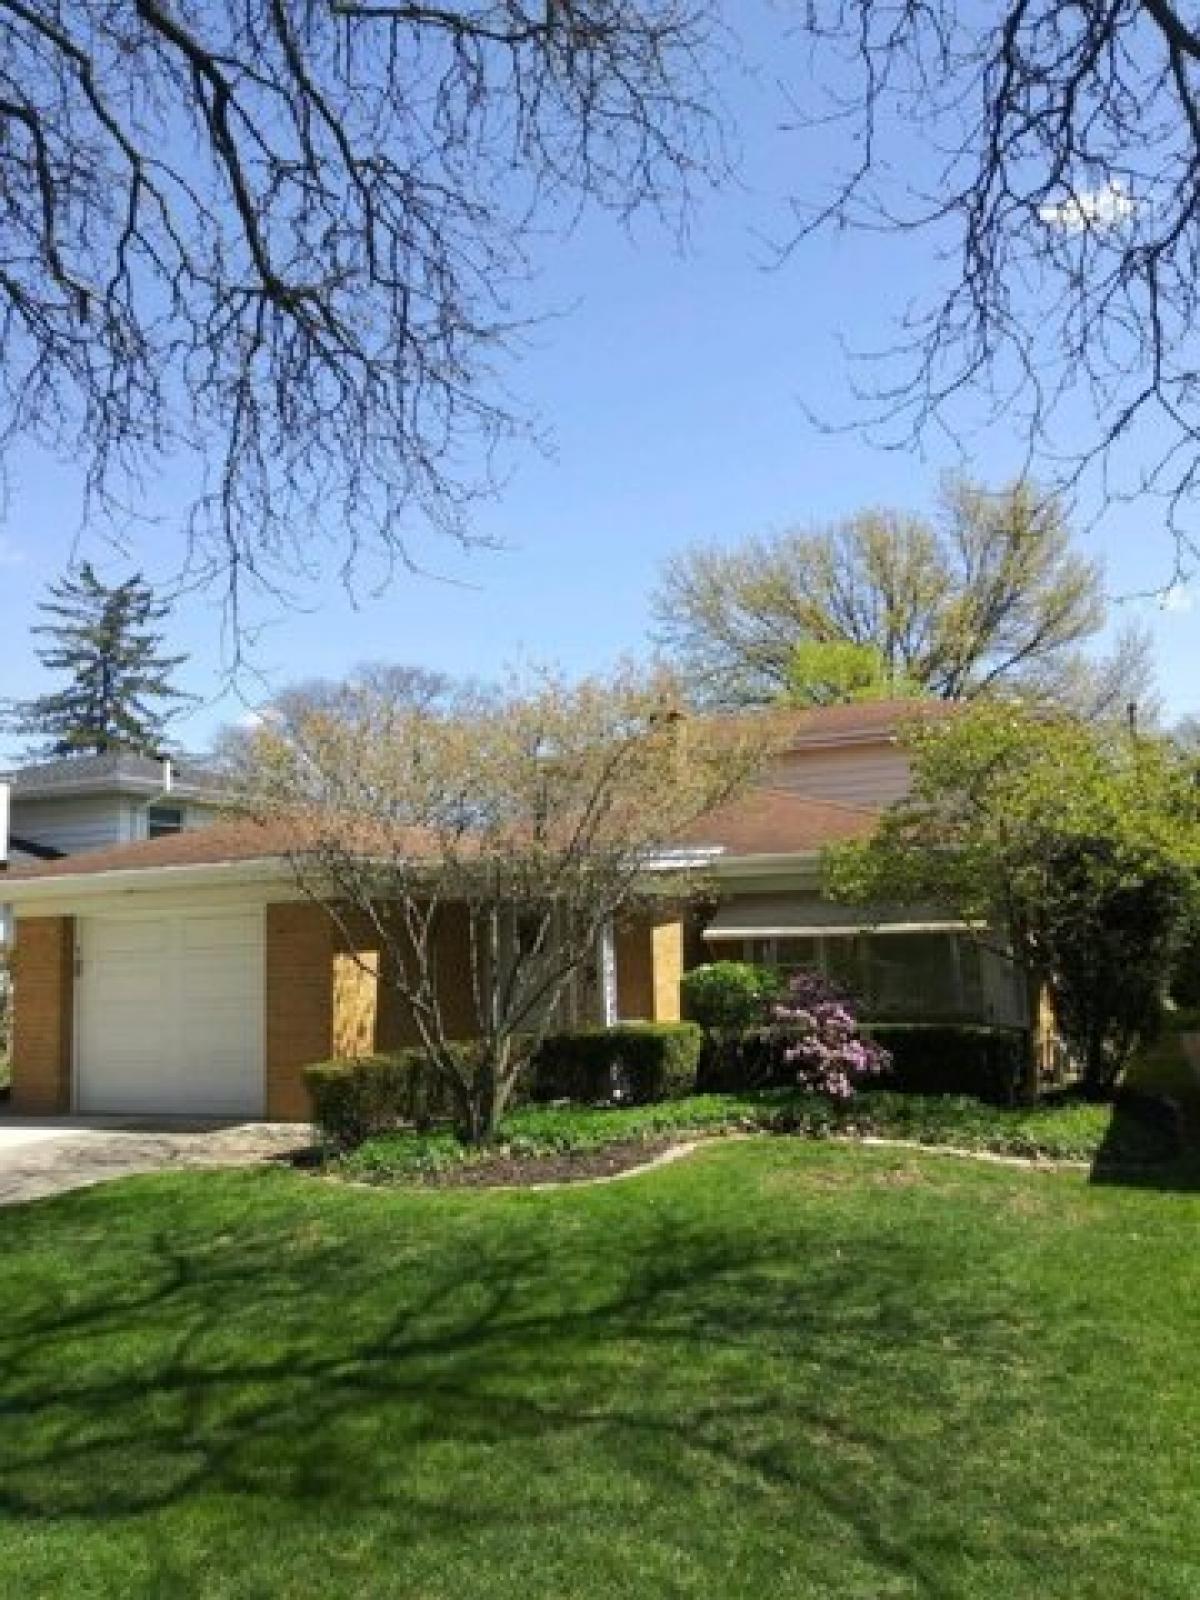 Picture of Home For Sale in La Grange, Illinois, United States